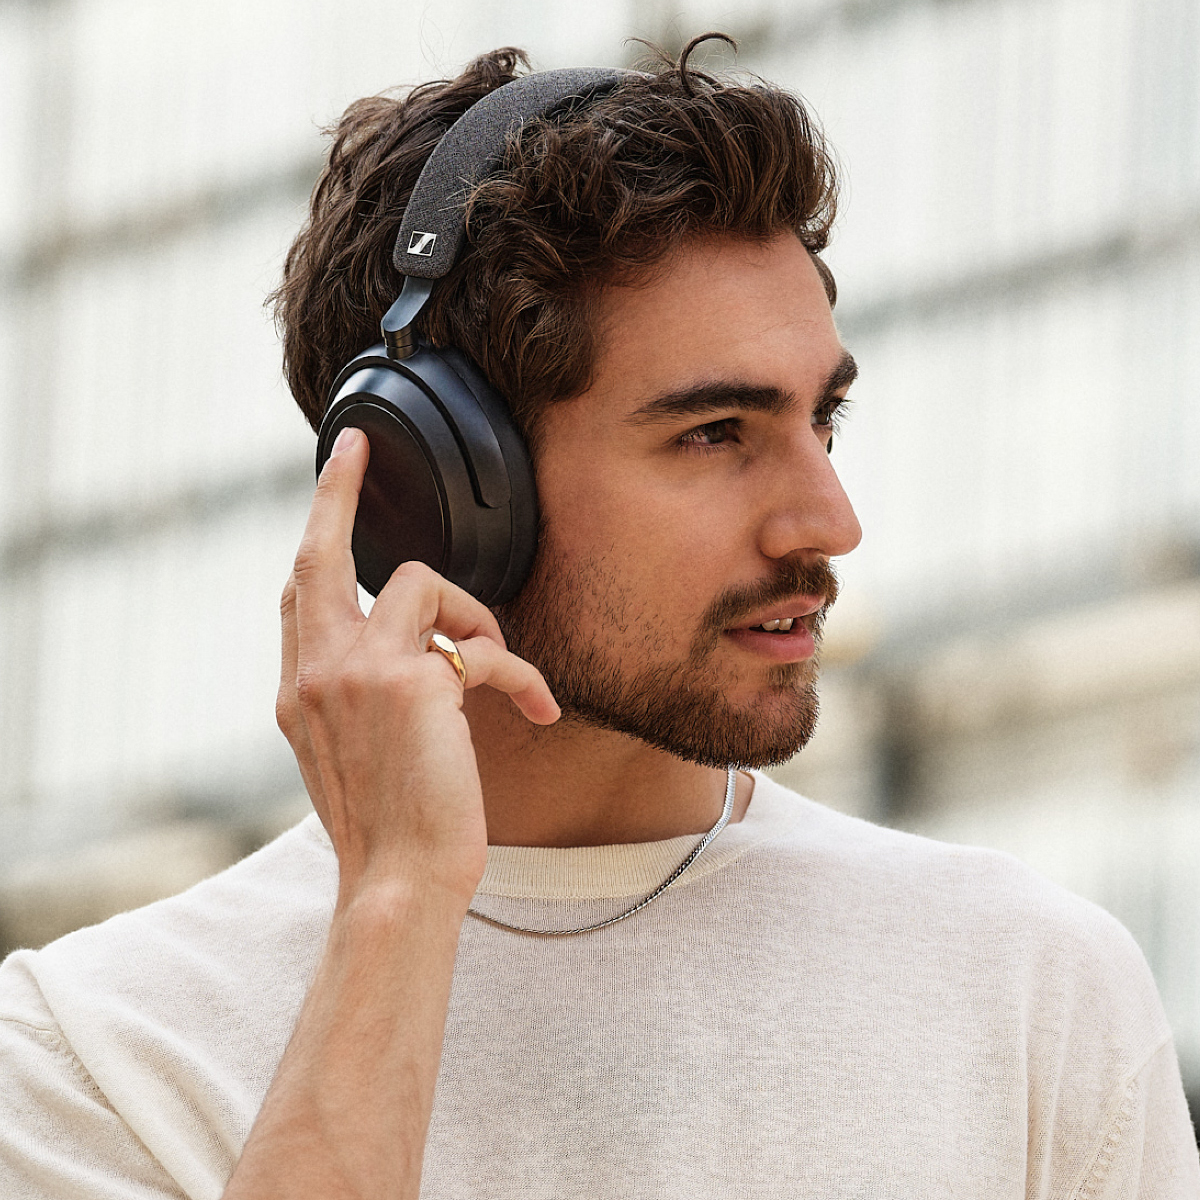 Sennheiser Momentum 4 Wireless Noise Cancelling Over-Ear Headphones